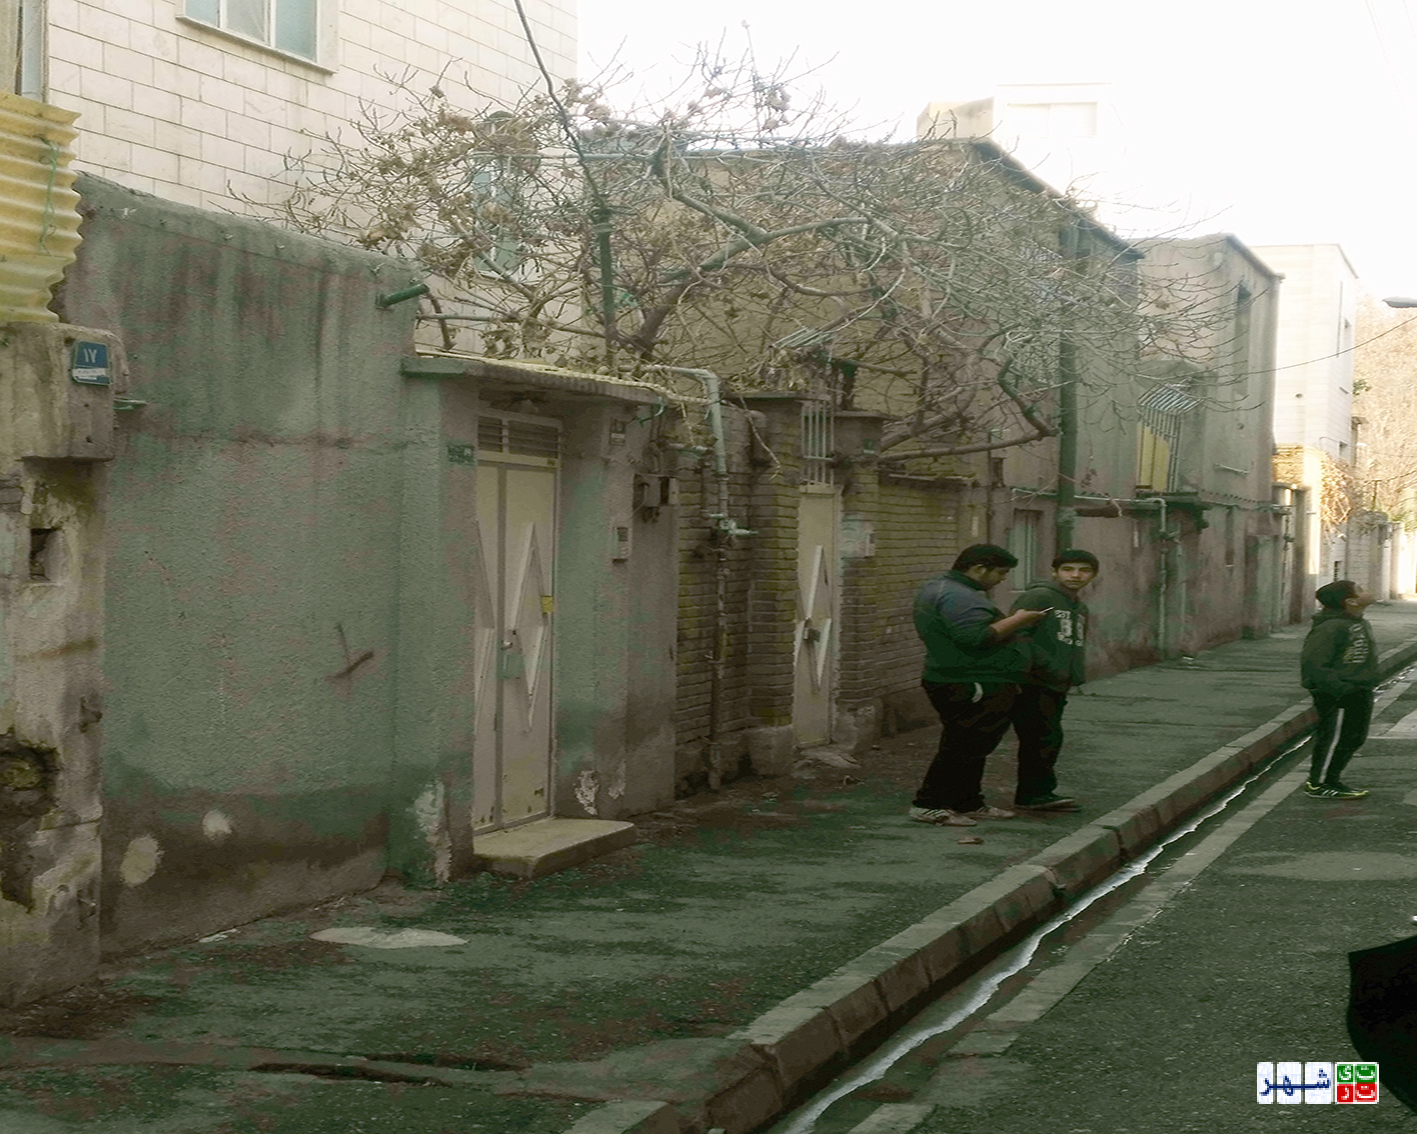 زندگی درکوچه های متروکه یک متری!/ یک شبه بخت سیاه خانه های امامزاده عبدالله باز شد!